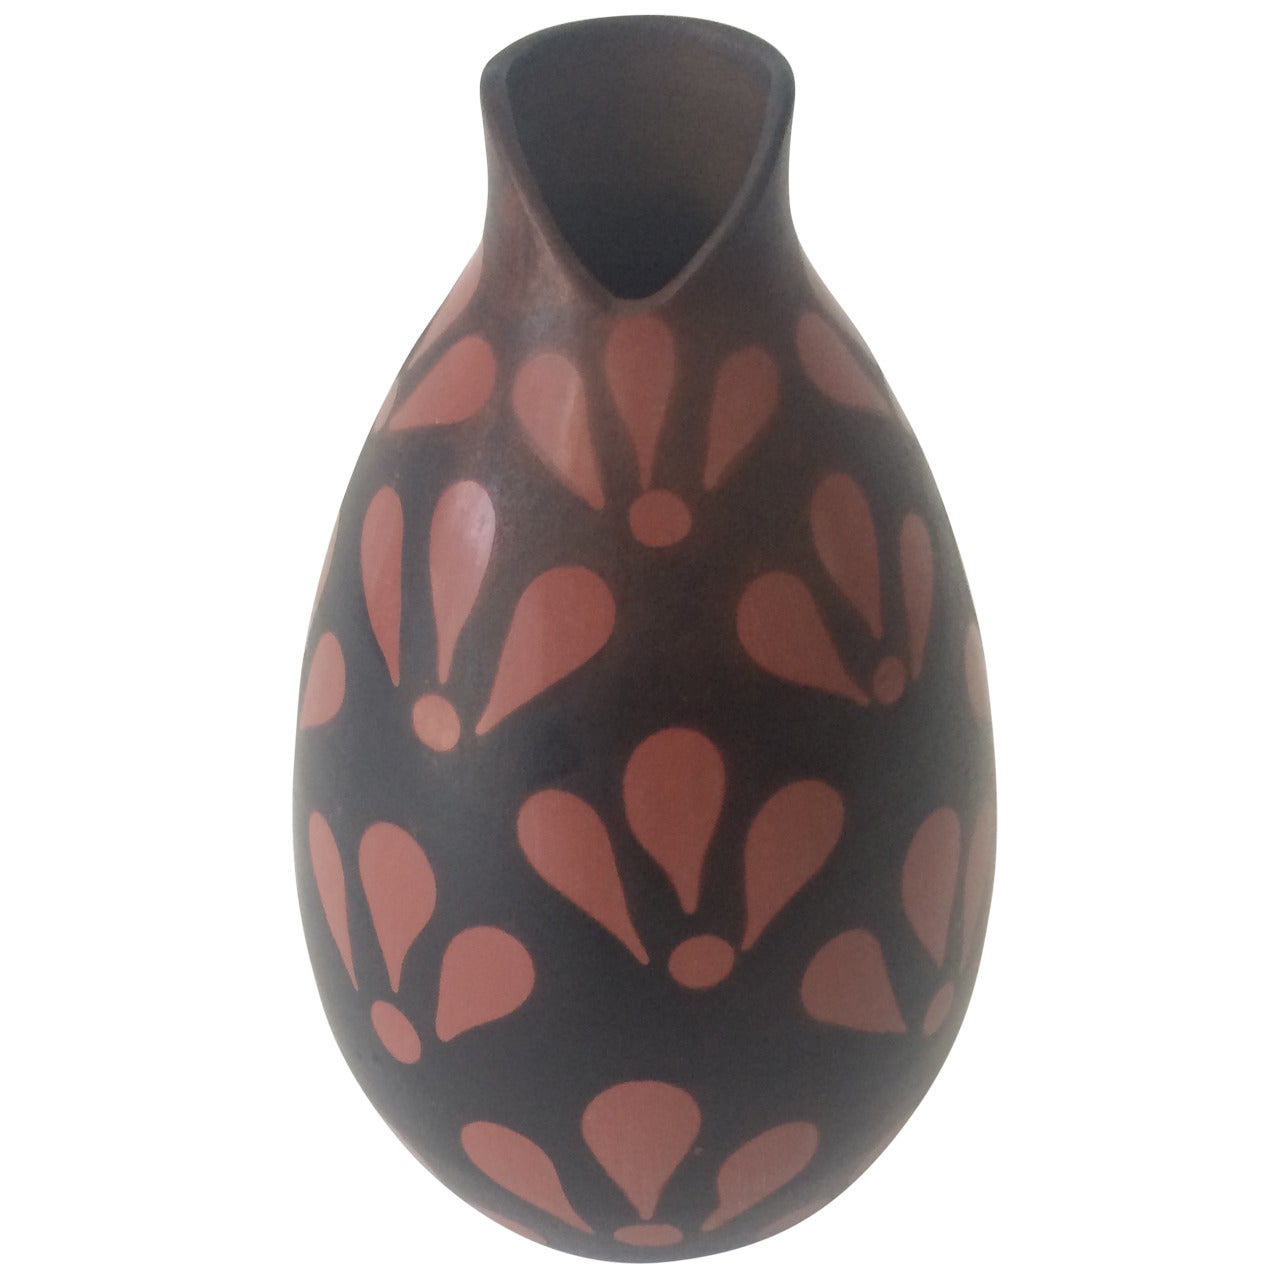 Hand-Painted Peruvian Ceramic Vase